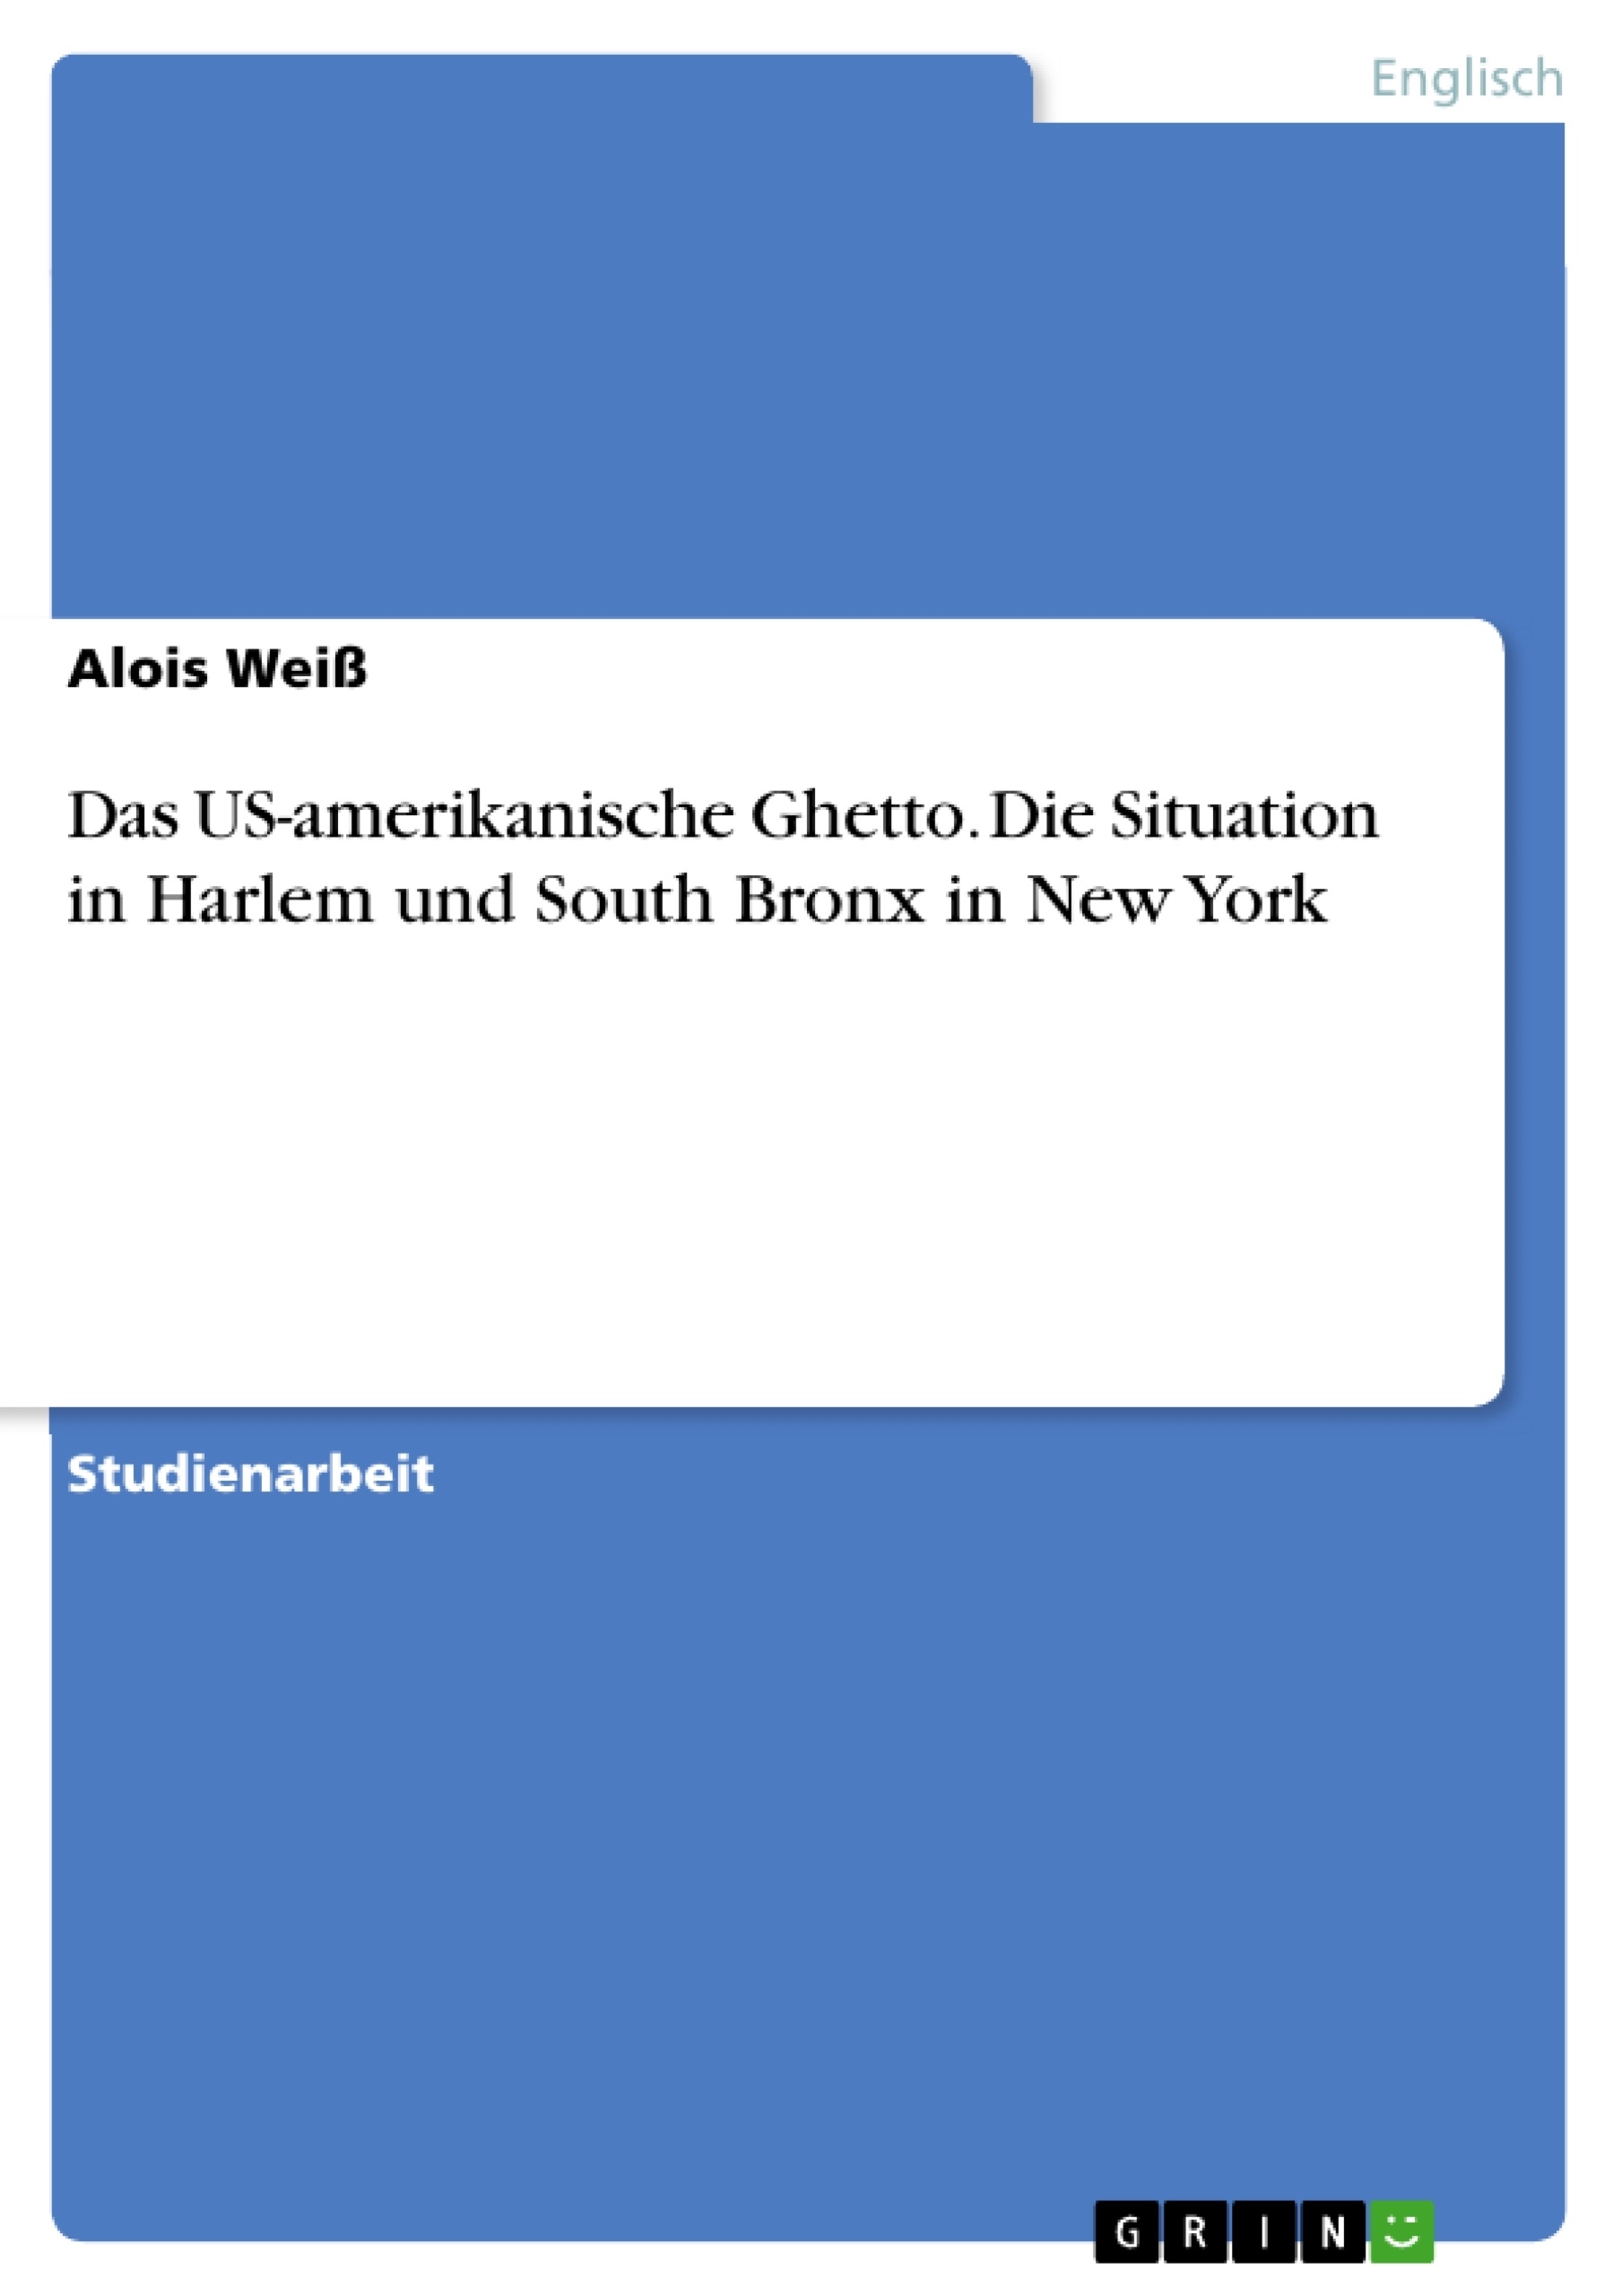 Título: Das US-amerikanische Ghetto. Die Situation in Harlem und South Bronx in New York